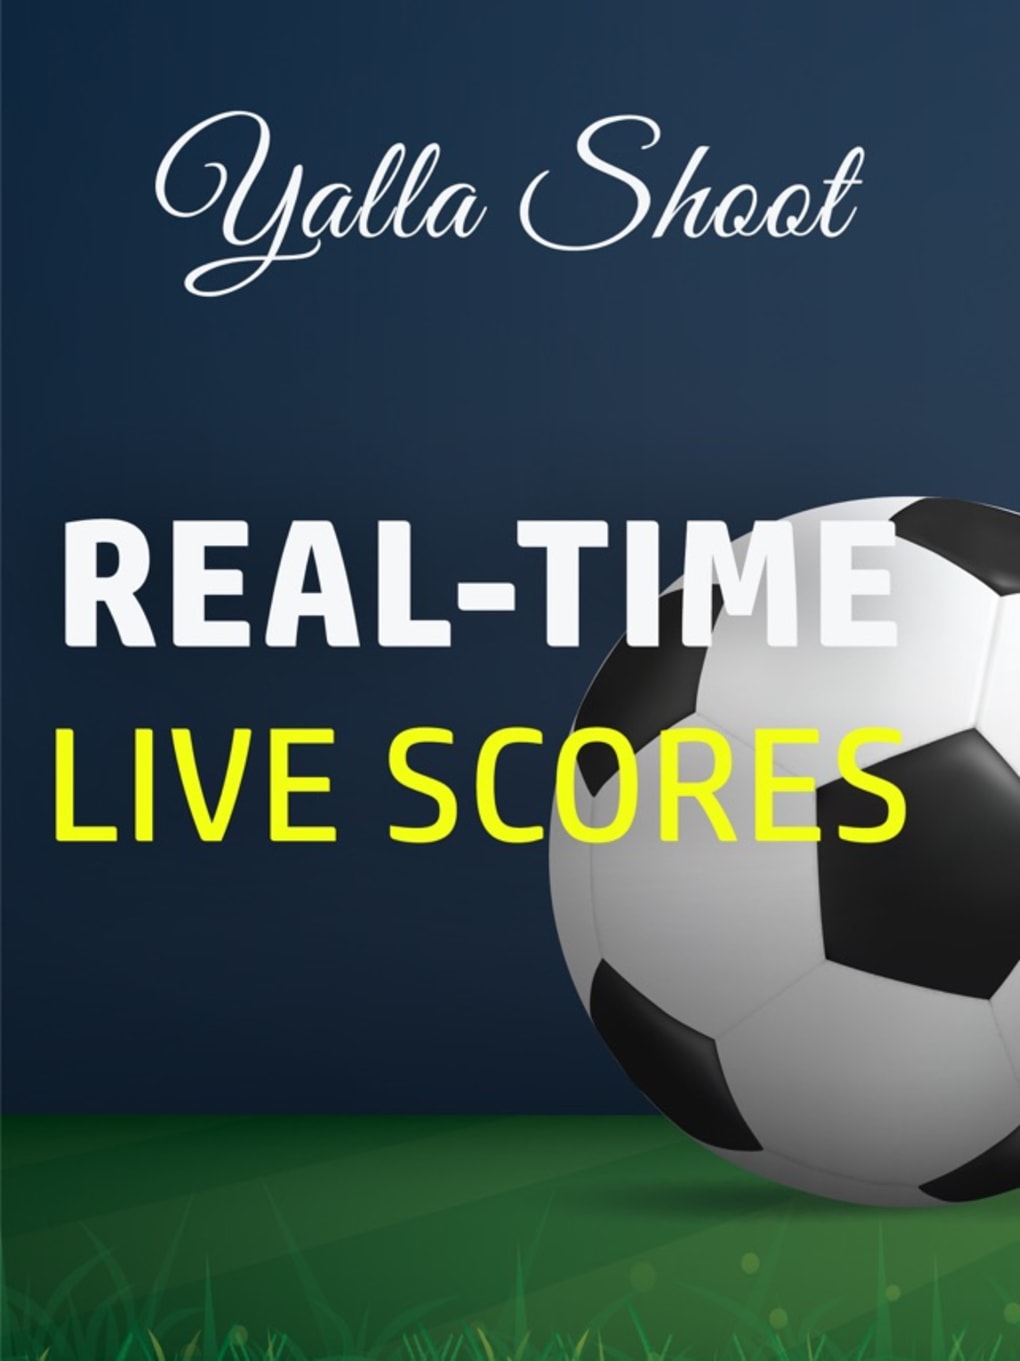 Yalla Shoot - Live Scores pour iPhone